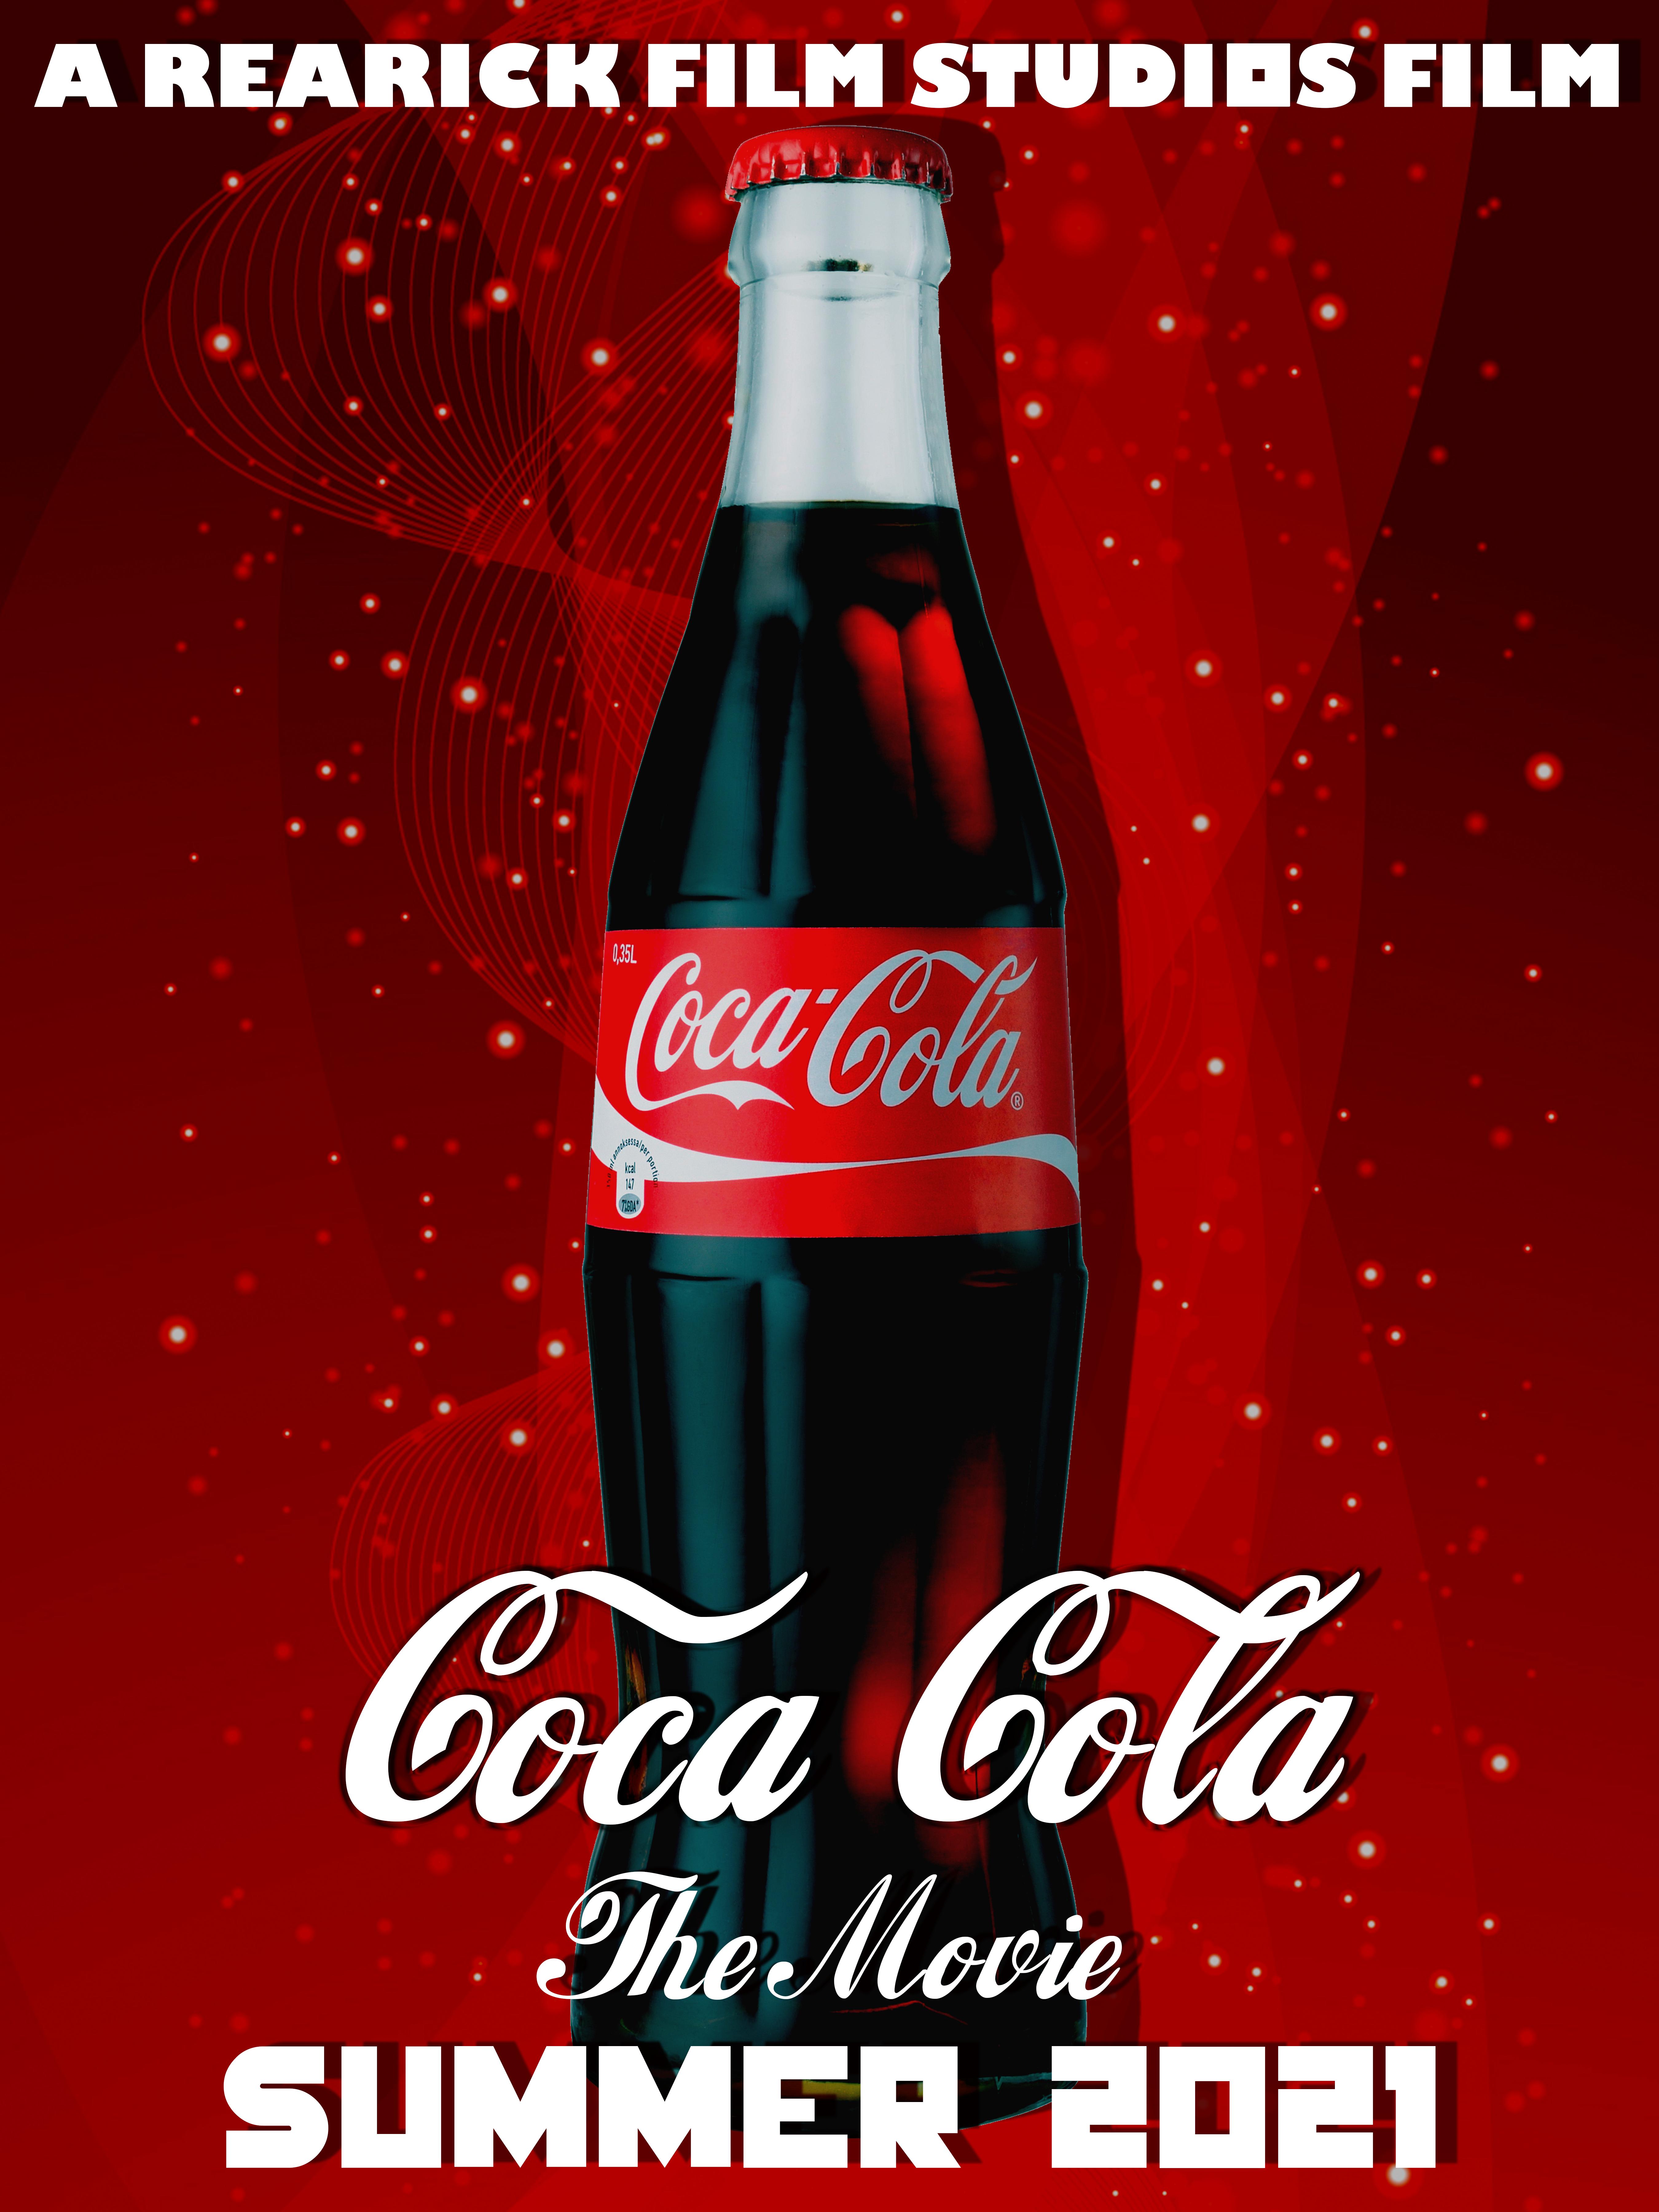 Coca-Cola: The Fan Movie